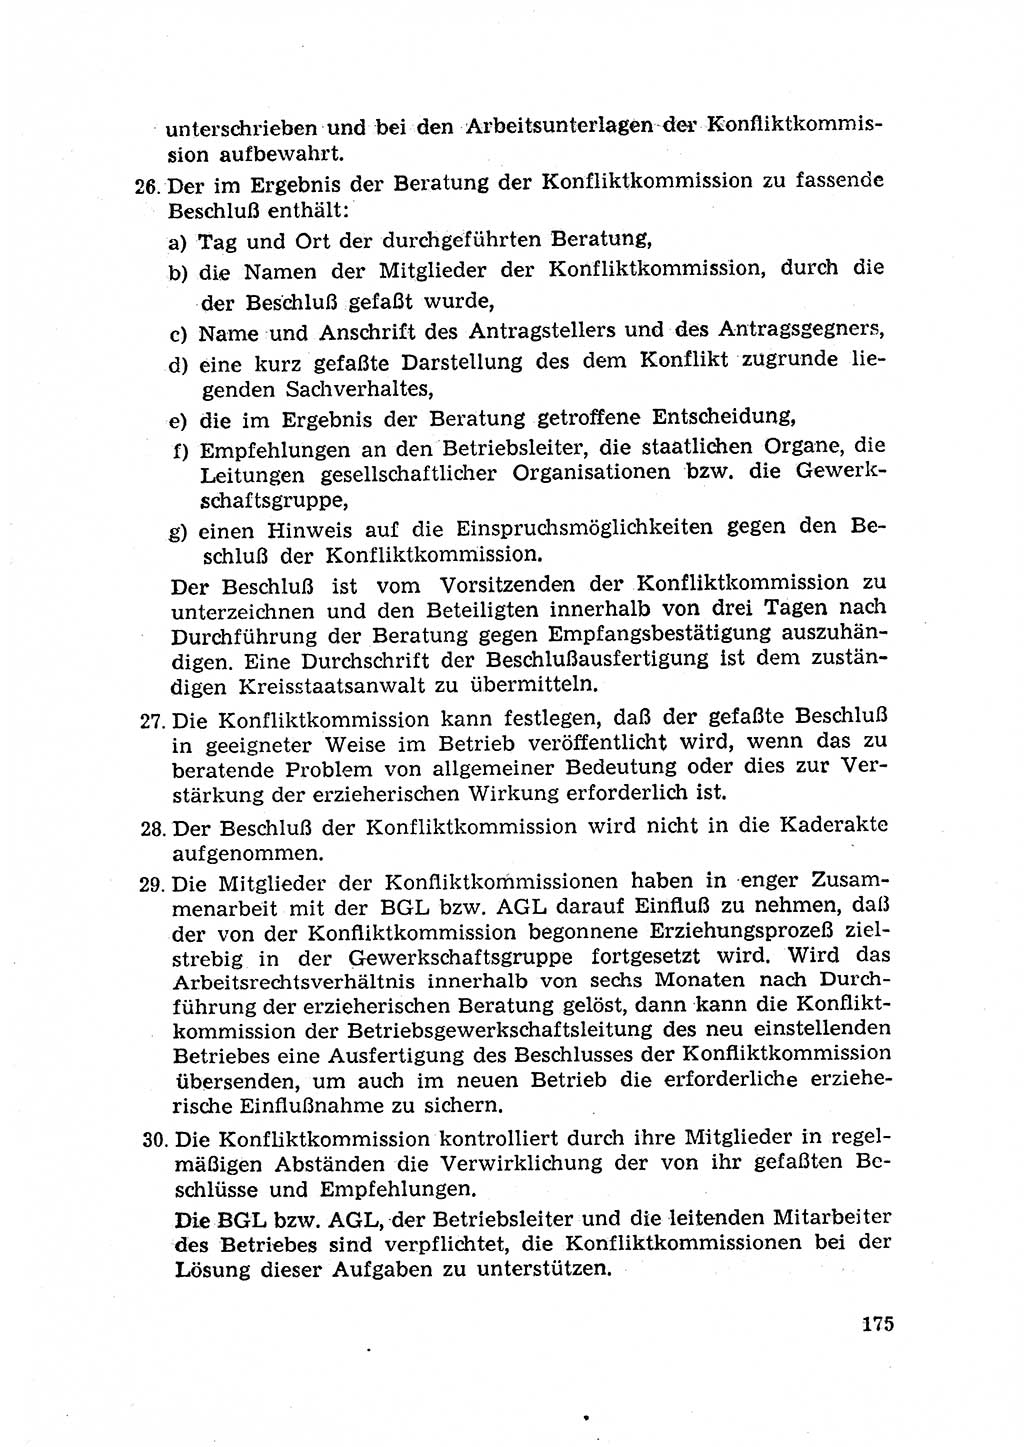 Rechtspflegeerlaß [Deutsche Demokratische Republik (DDR)] 1963, Seite 175 (R.-Pfl.-Erl. DDR 1963, S. 175)